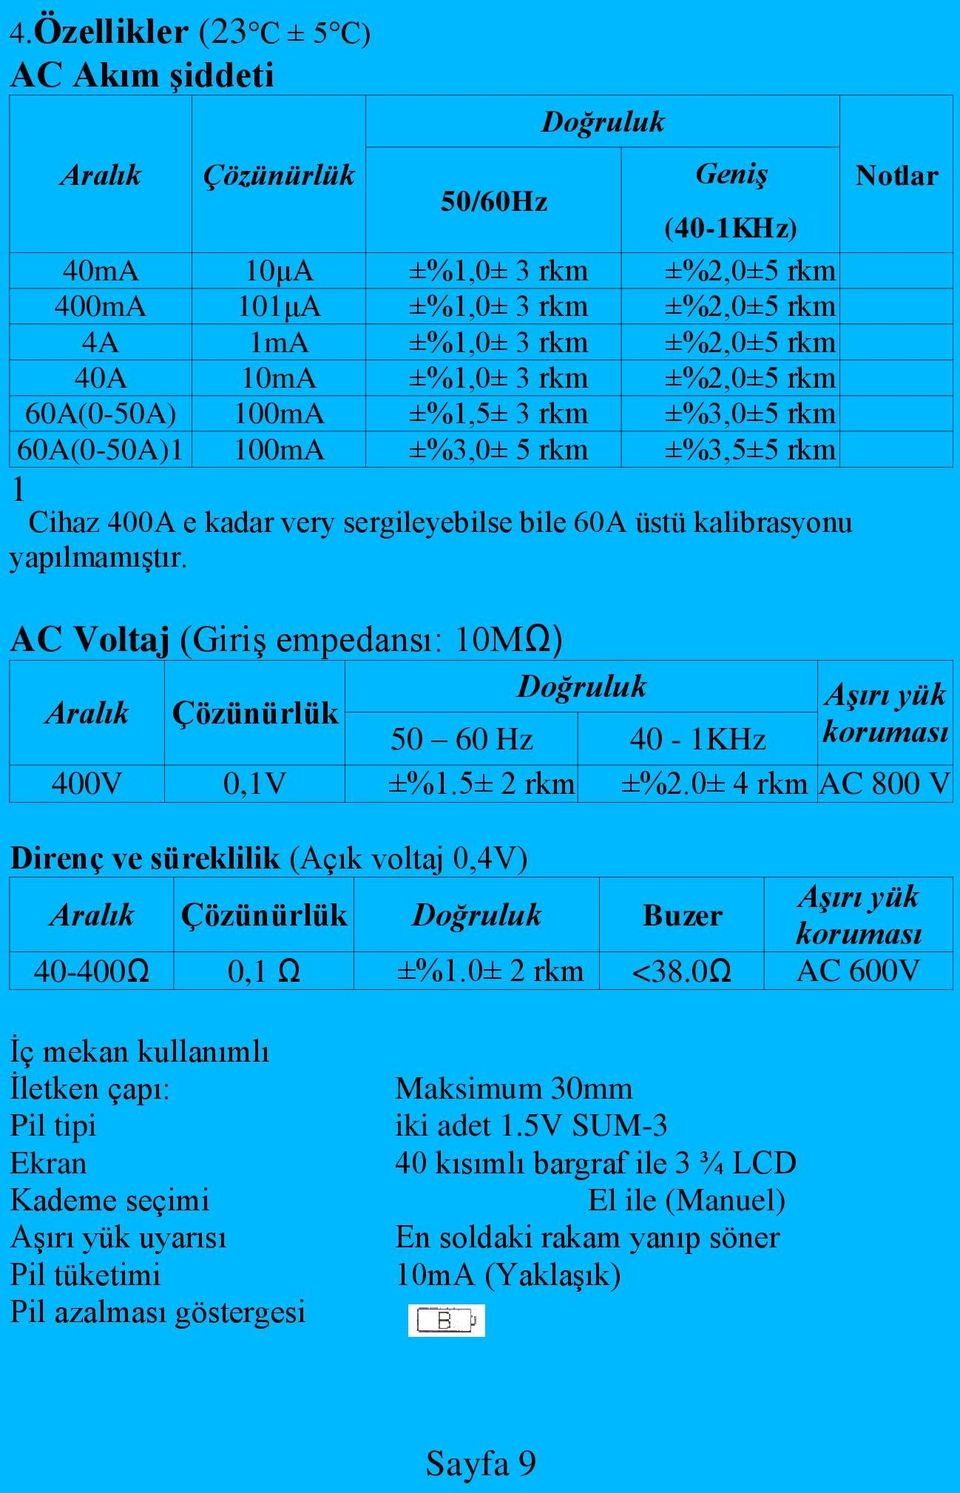 yapılmamıştır. AC Voltaj (Giriş empedansı: 10MΩ) Doğruluk Aşırı yük Aralık Çözünürlük 50 60 Hz 40-1KHz koruması 400V 0,1V ±%1.5± 2 rkm ±%2.